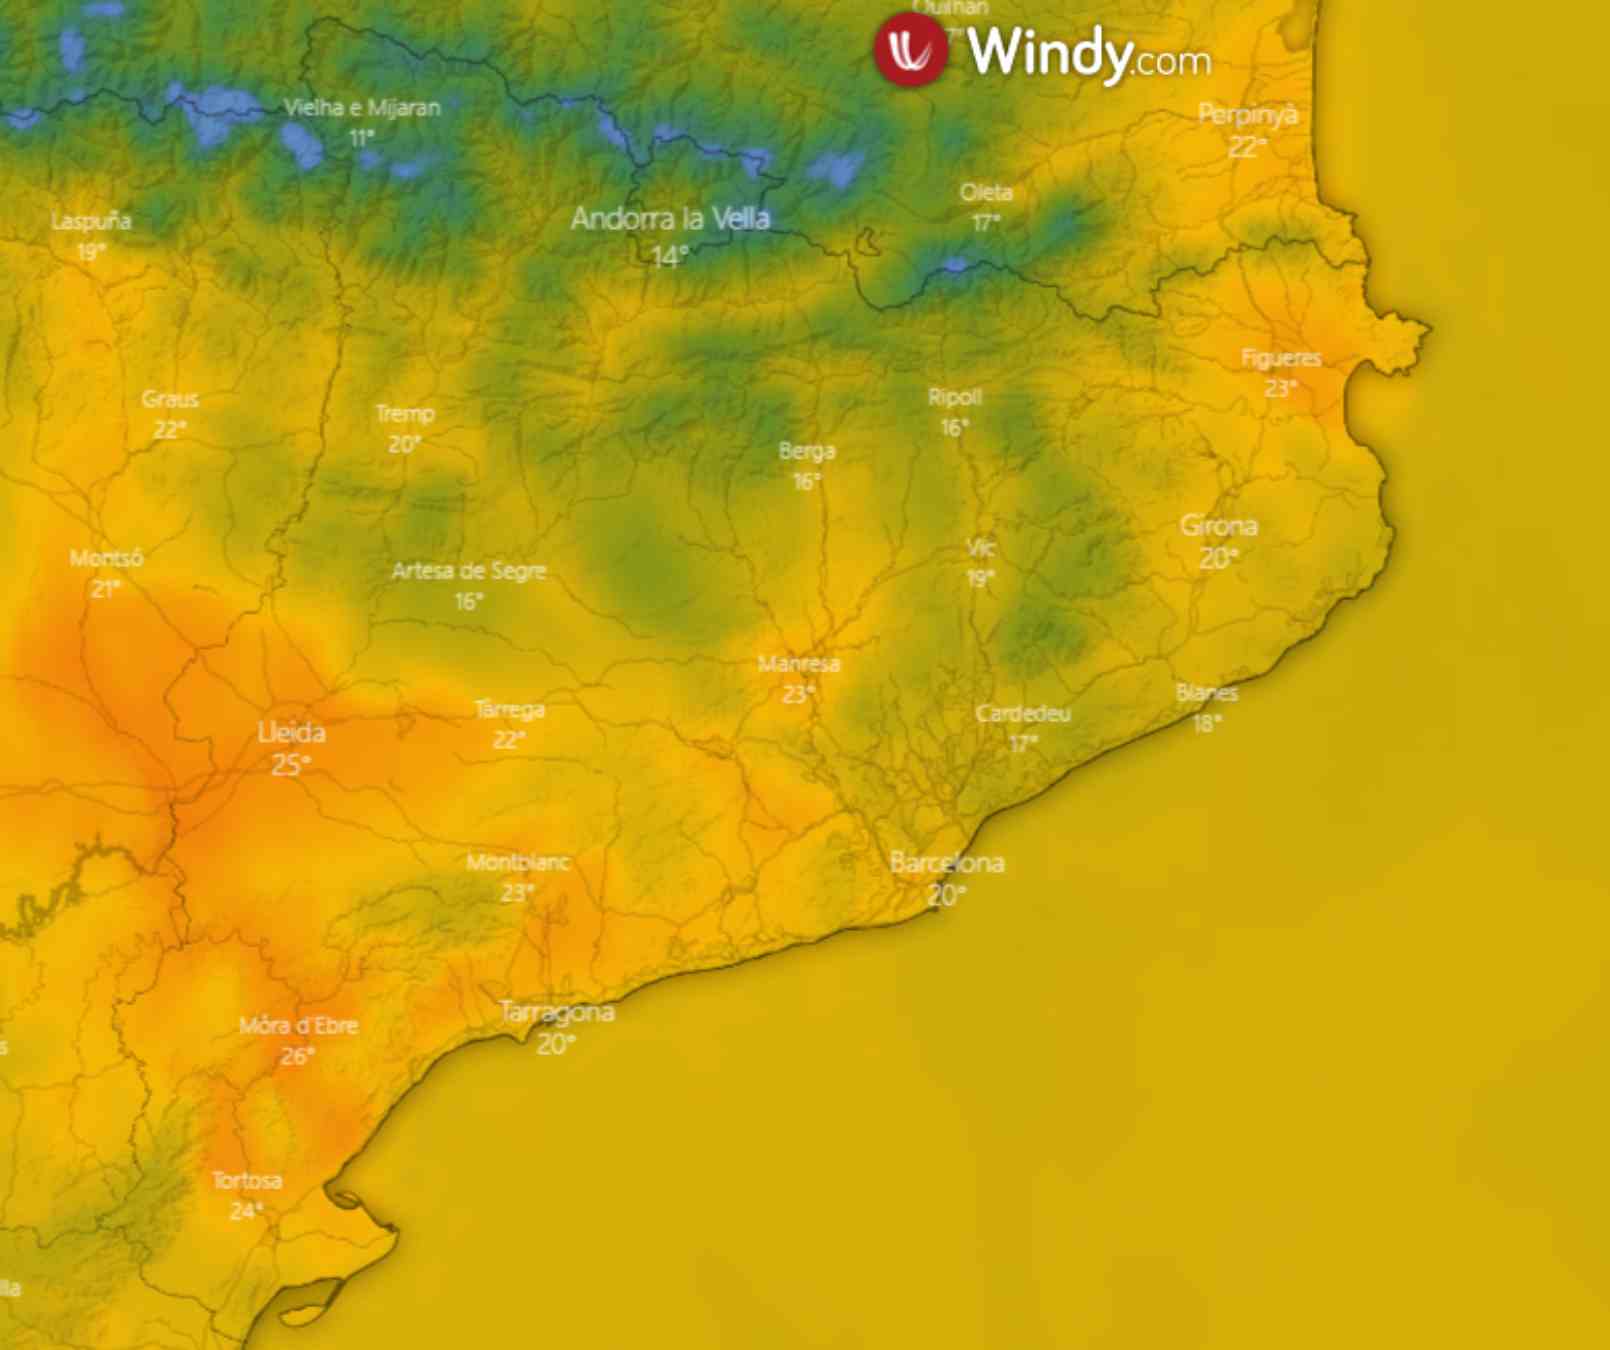 La temperatura més alta aquest diumenge es donarà entre Tortosa, Móra d'Ebre i Lleida / WINDY